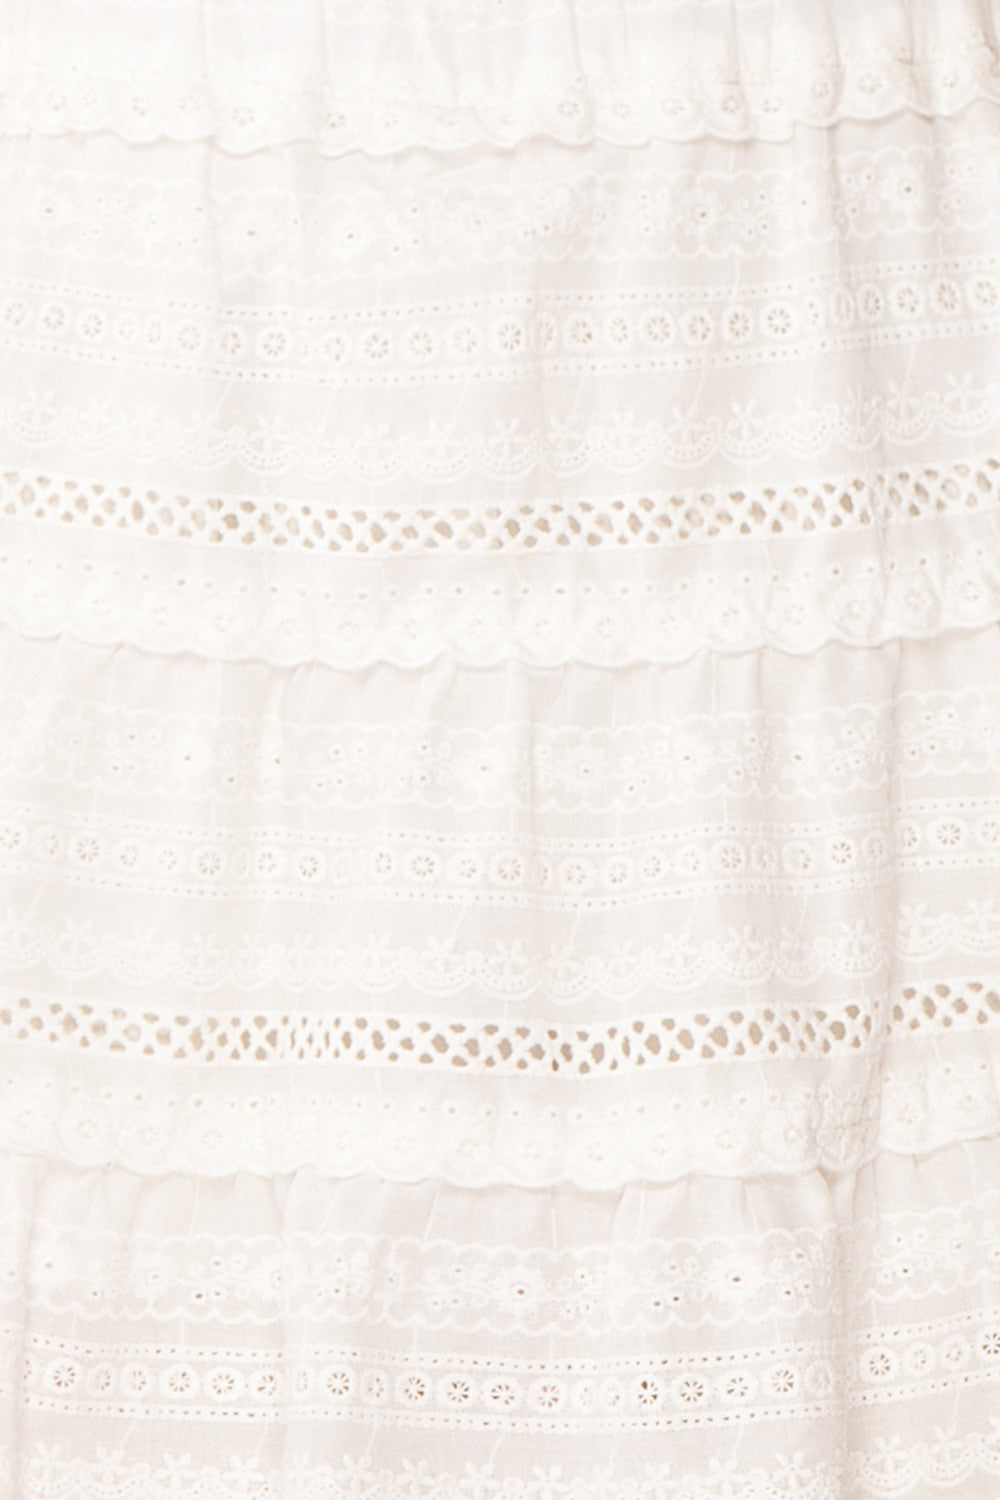 Niemodlin White Openwork Short Skirt | Boutique 1861 fabric 